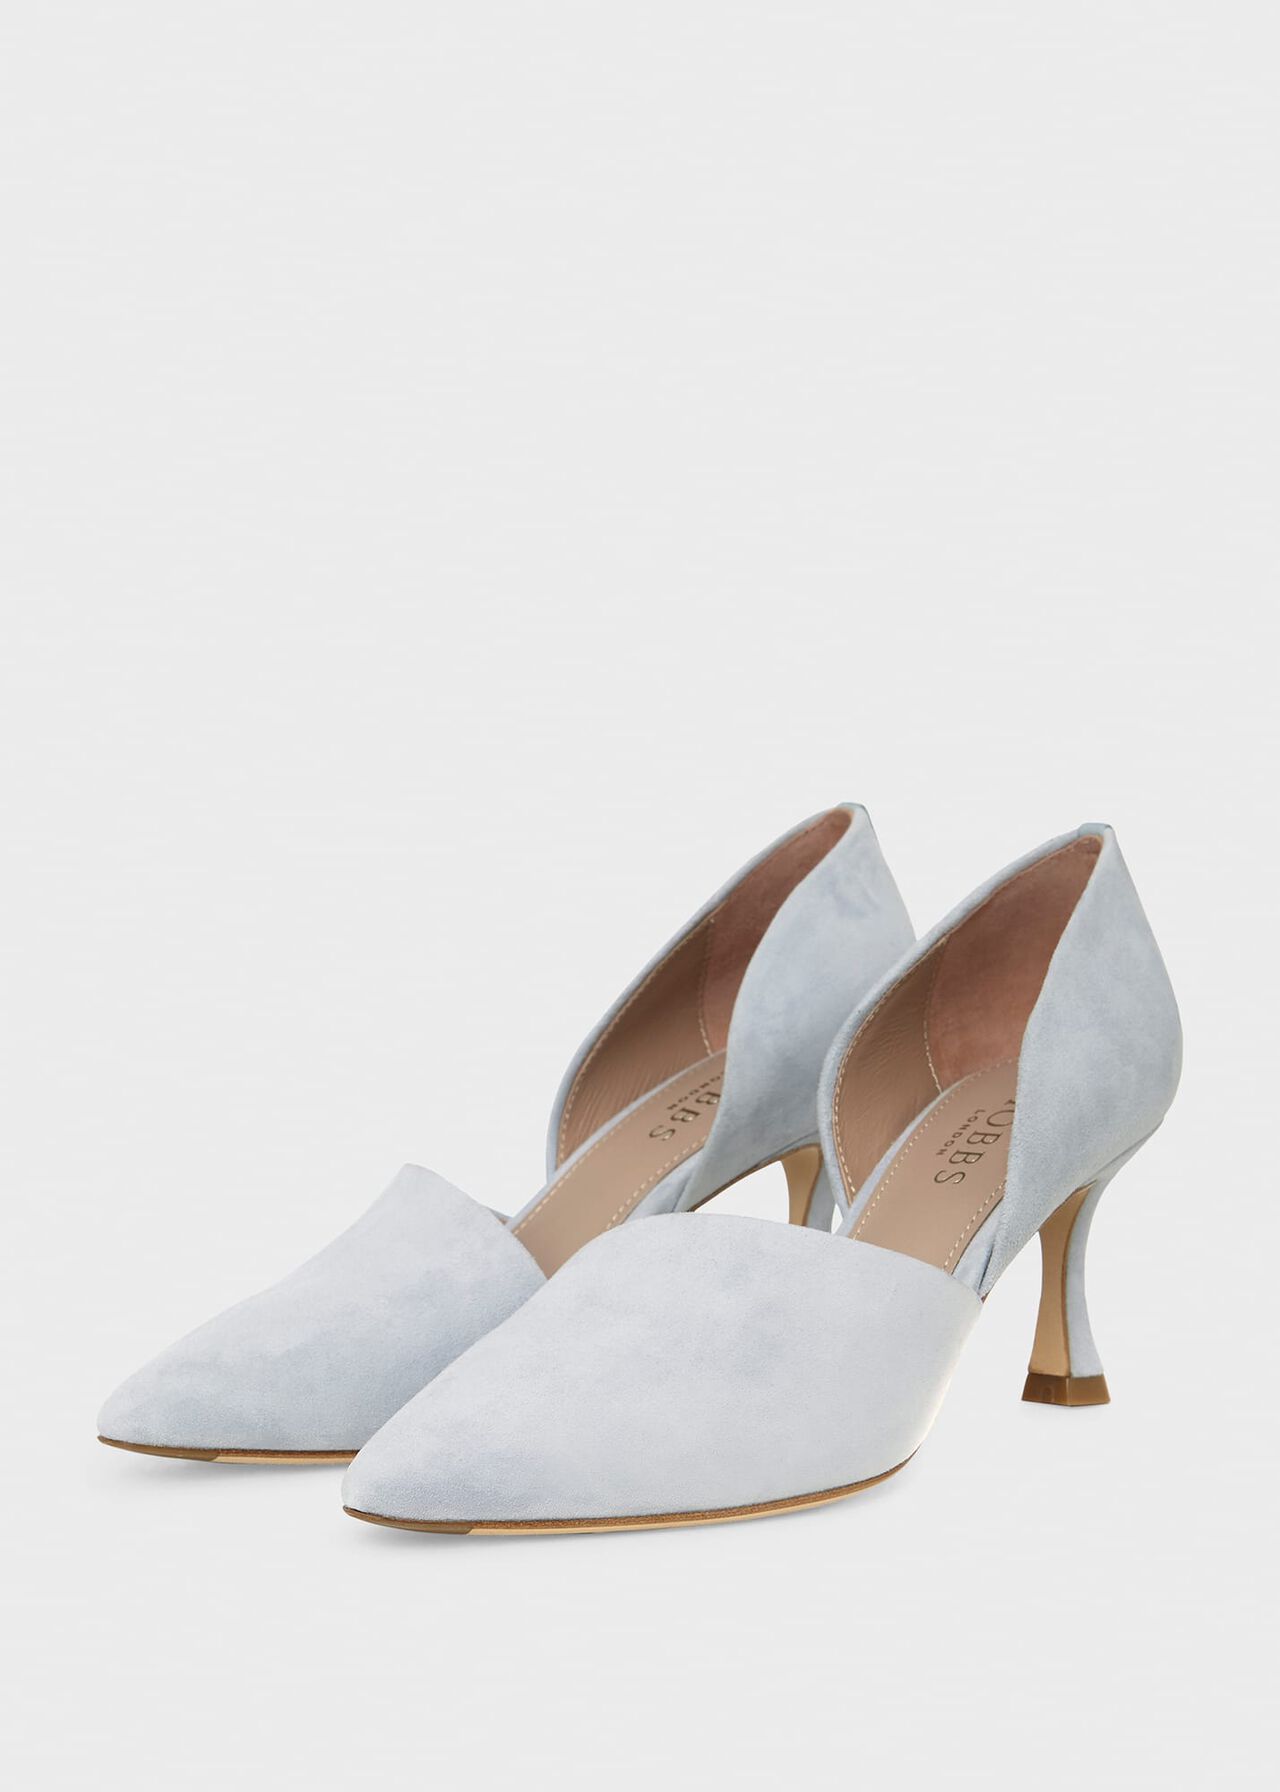 Maya Suede Stiletto D'Orsay Court Shoes, Celeste Blue, hi-res